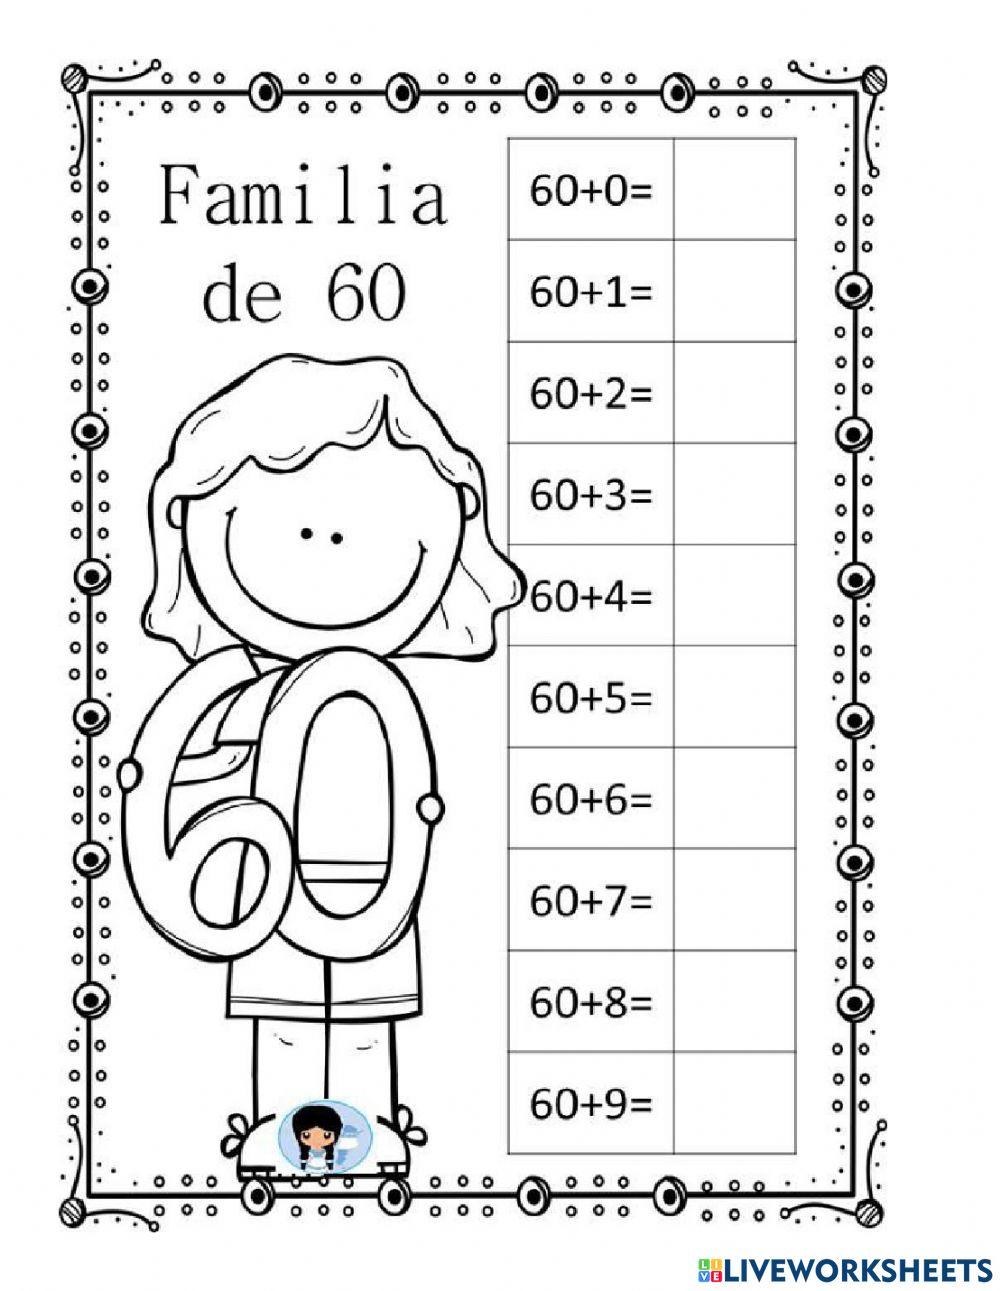 Guía familia de números